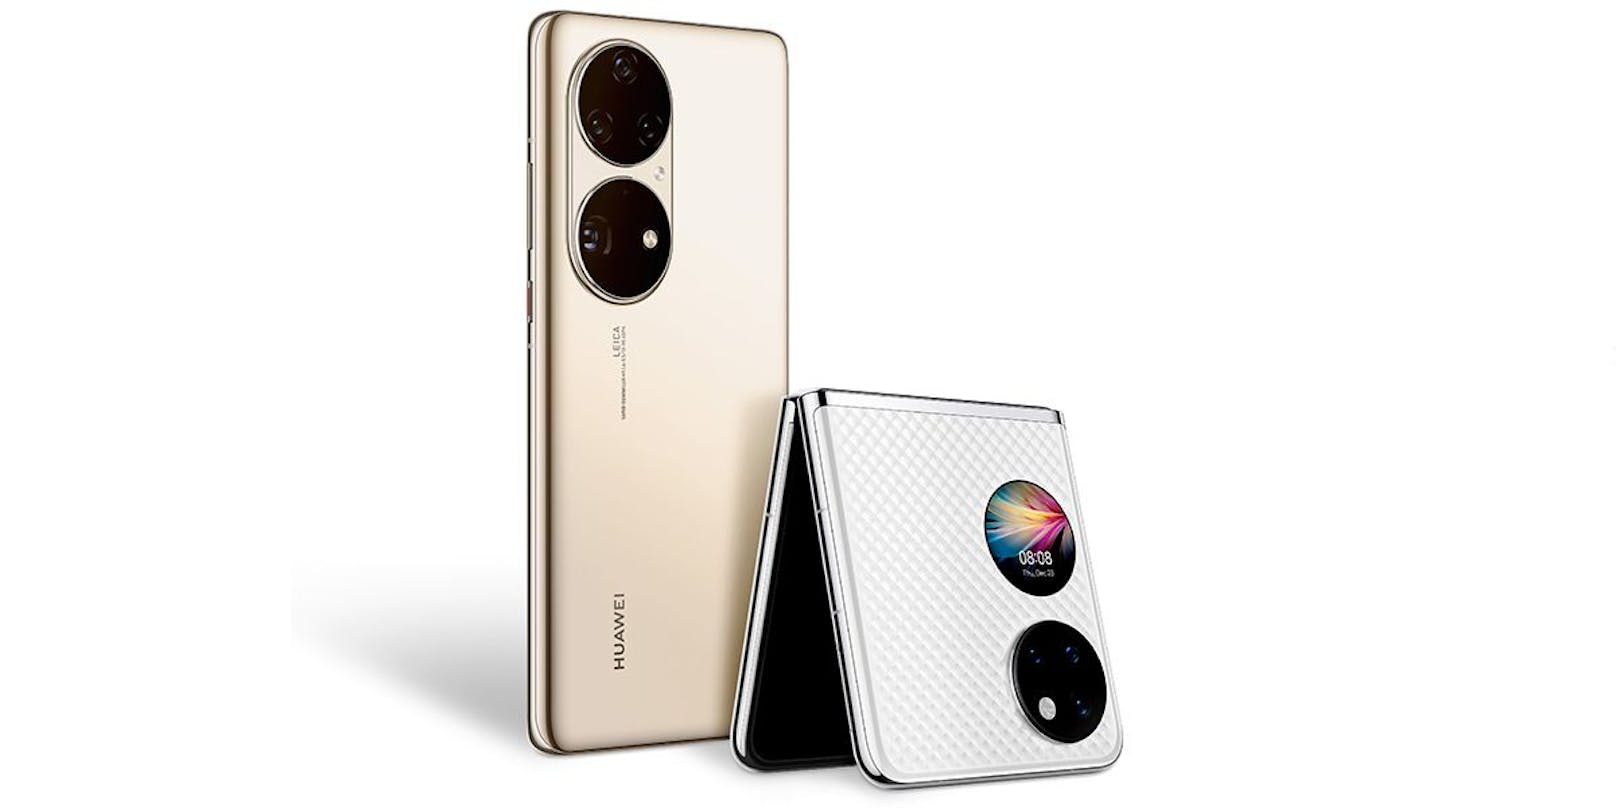 ... hat Huawei auch das neue Falt-Smartphone Huawei P50 Pocket vorgestellt. Beide Modelle starten in Österreich ab Mitte Februar.